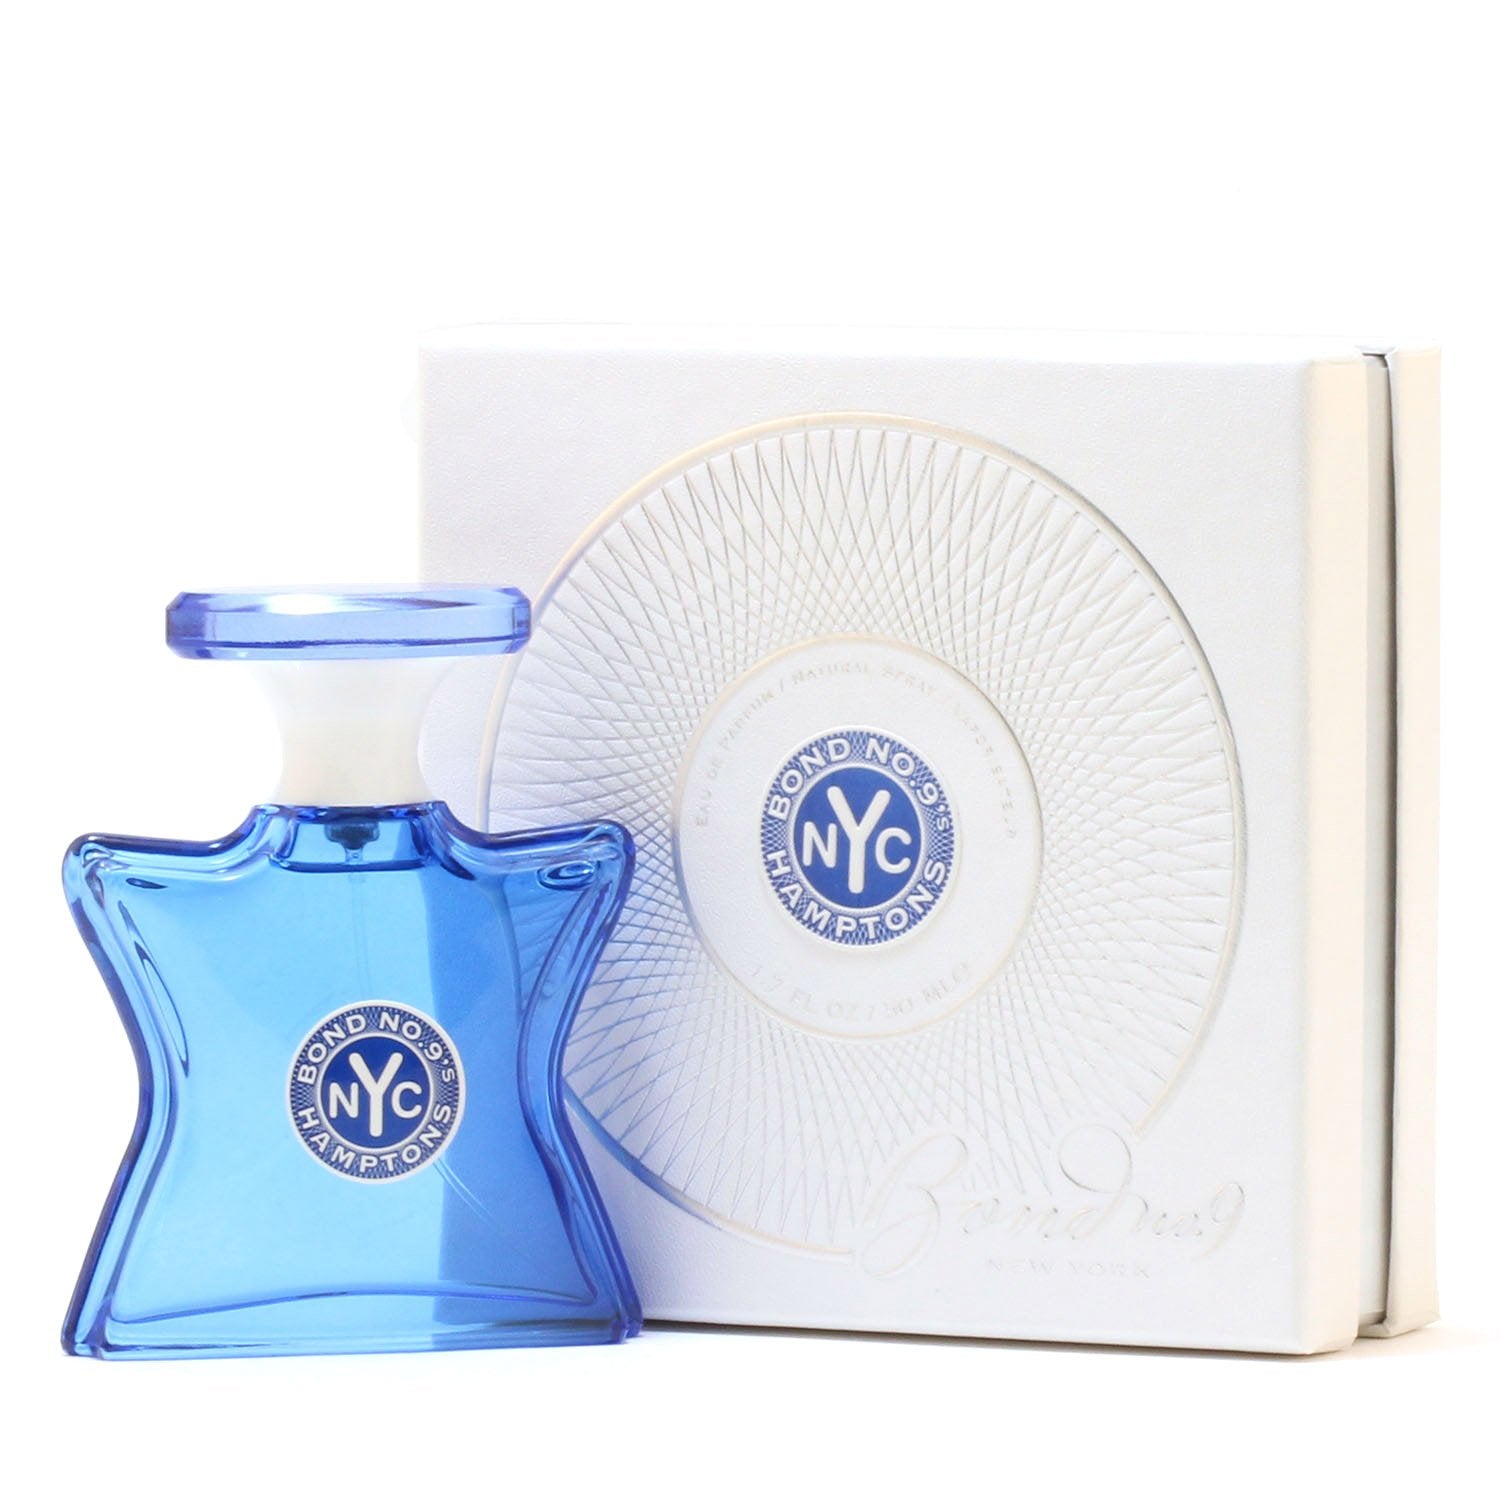 Perfume - BOND NO 9 HAMPTONS UNISEX - EAU DE PARFUM SPRAY